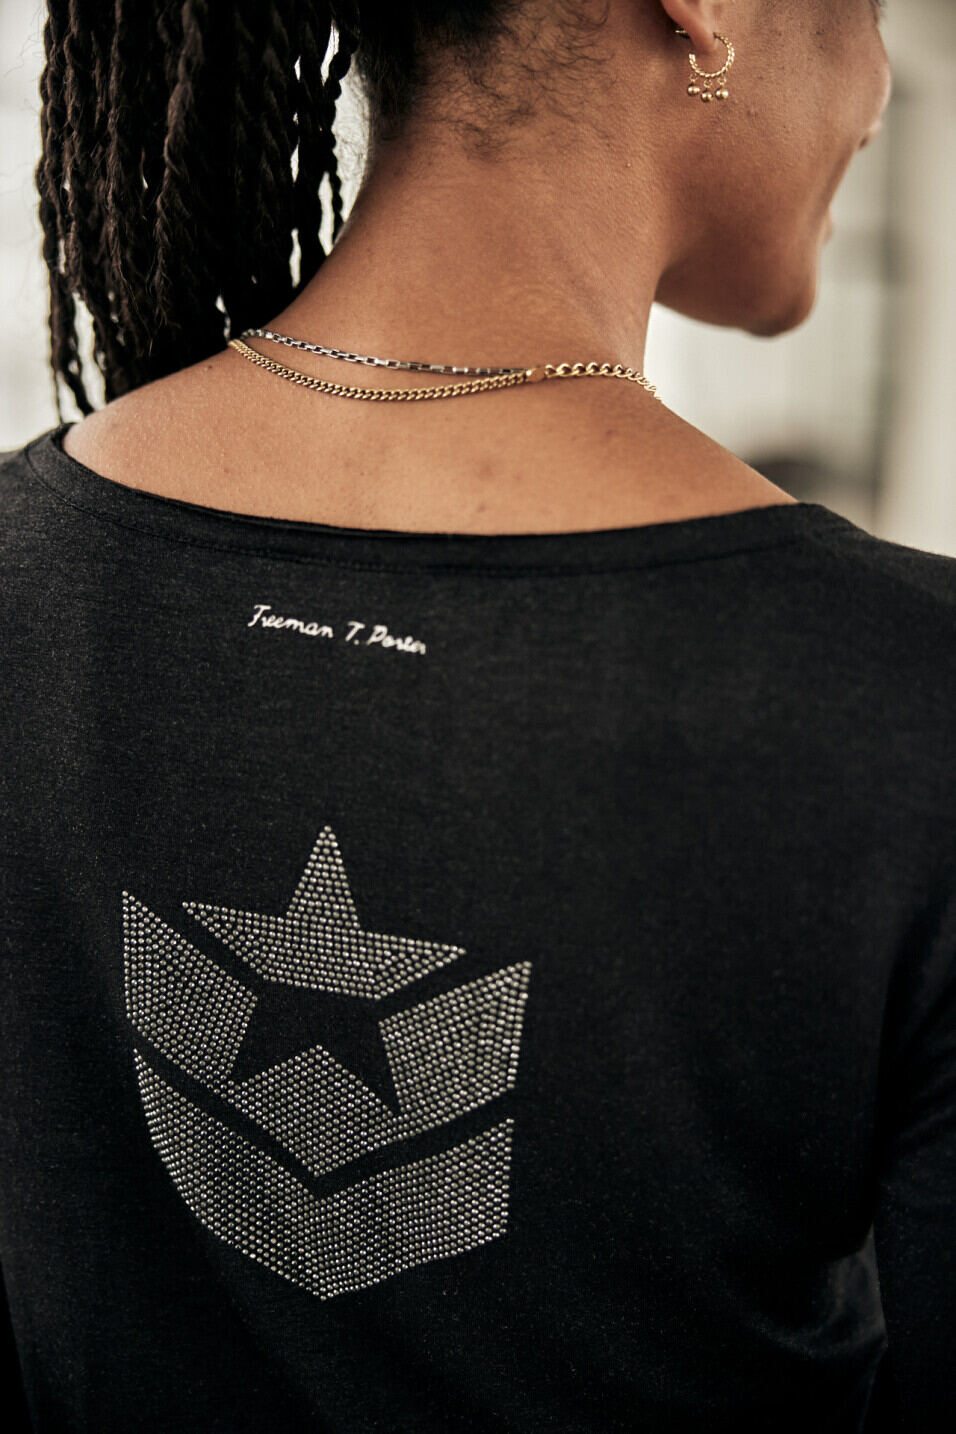 Camiseta logo strass Woman Torina Icon Black | Freeman T. Porter